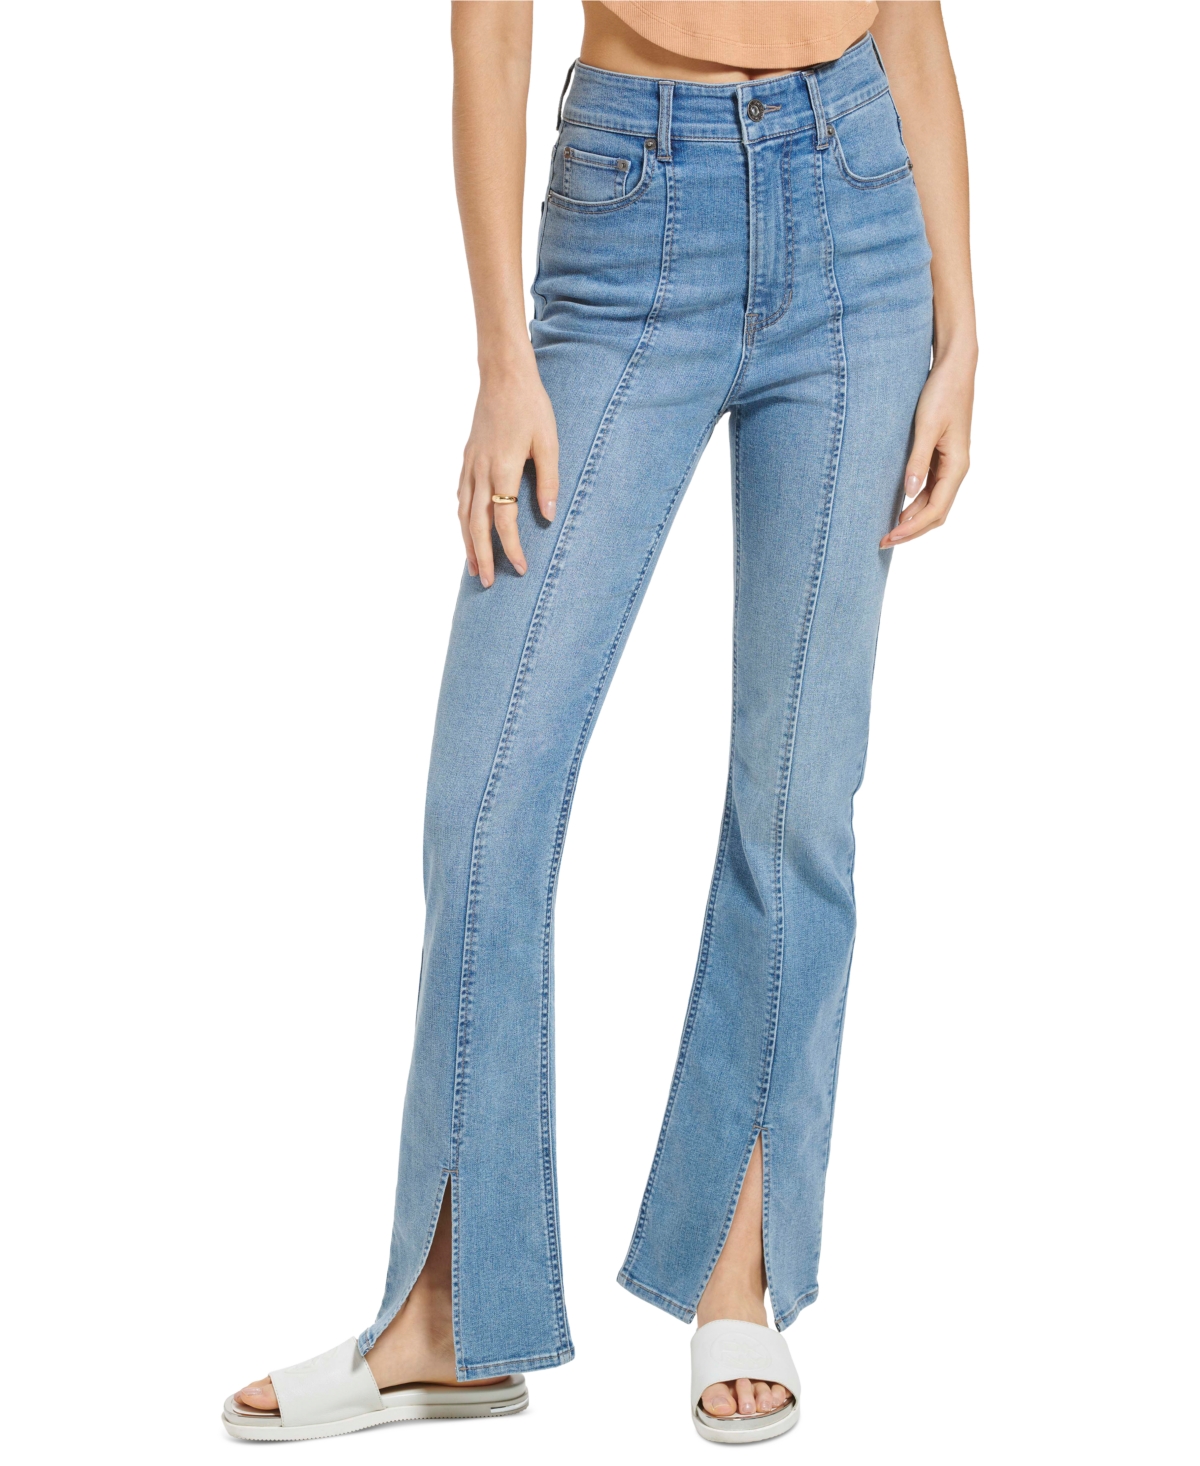  Dkny Jeans Women's Split Hem Jeans